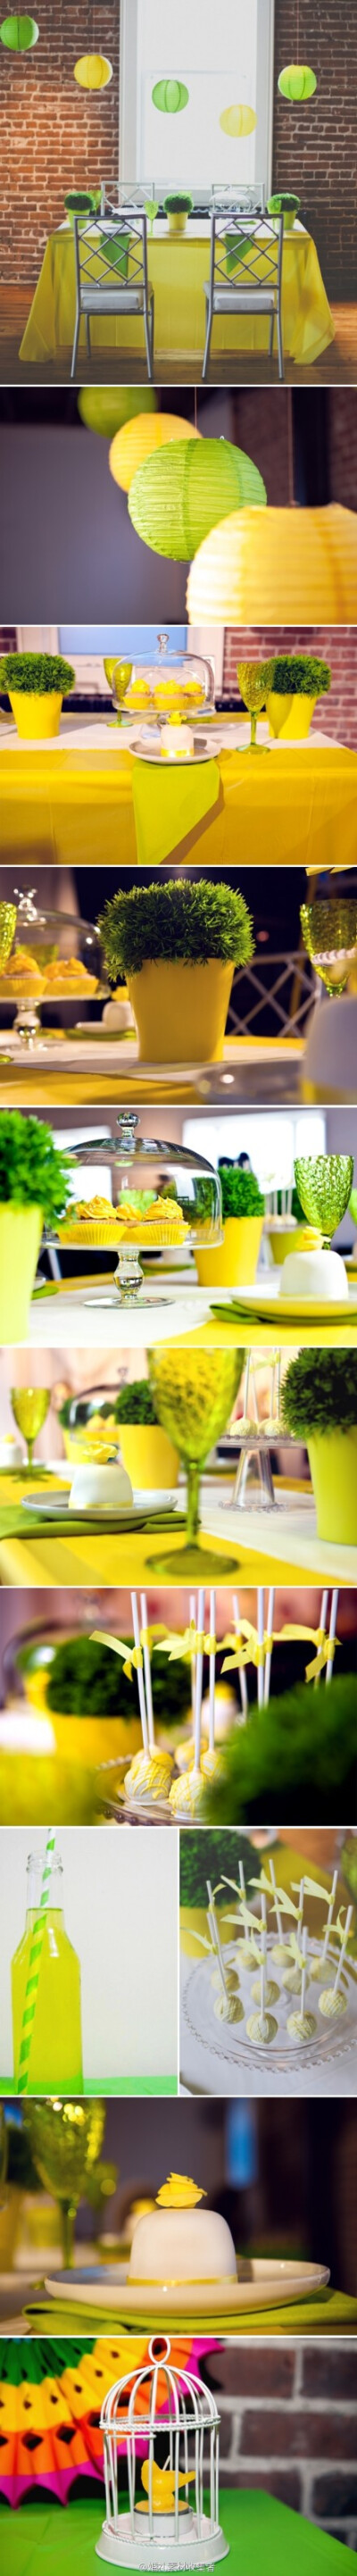 #婚礼色彩# 柠檬黄和柠檬绿的夏季餐桌装饰灵感--柠檬黄和柠檬绿清新明快，给人以自然的感觉。 http://t.cn/zRlEeeD (共10张图片) 收集于@最佳婚礼灵感